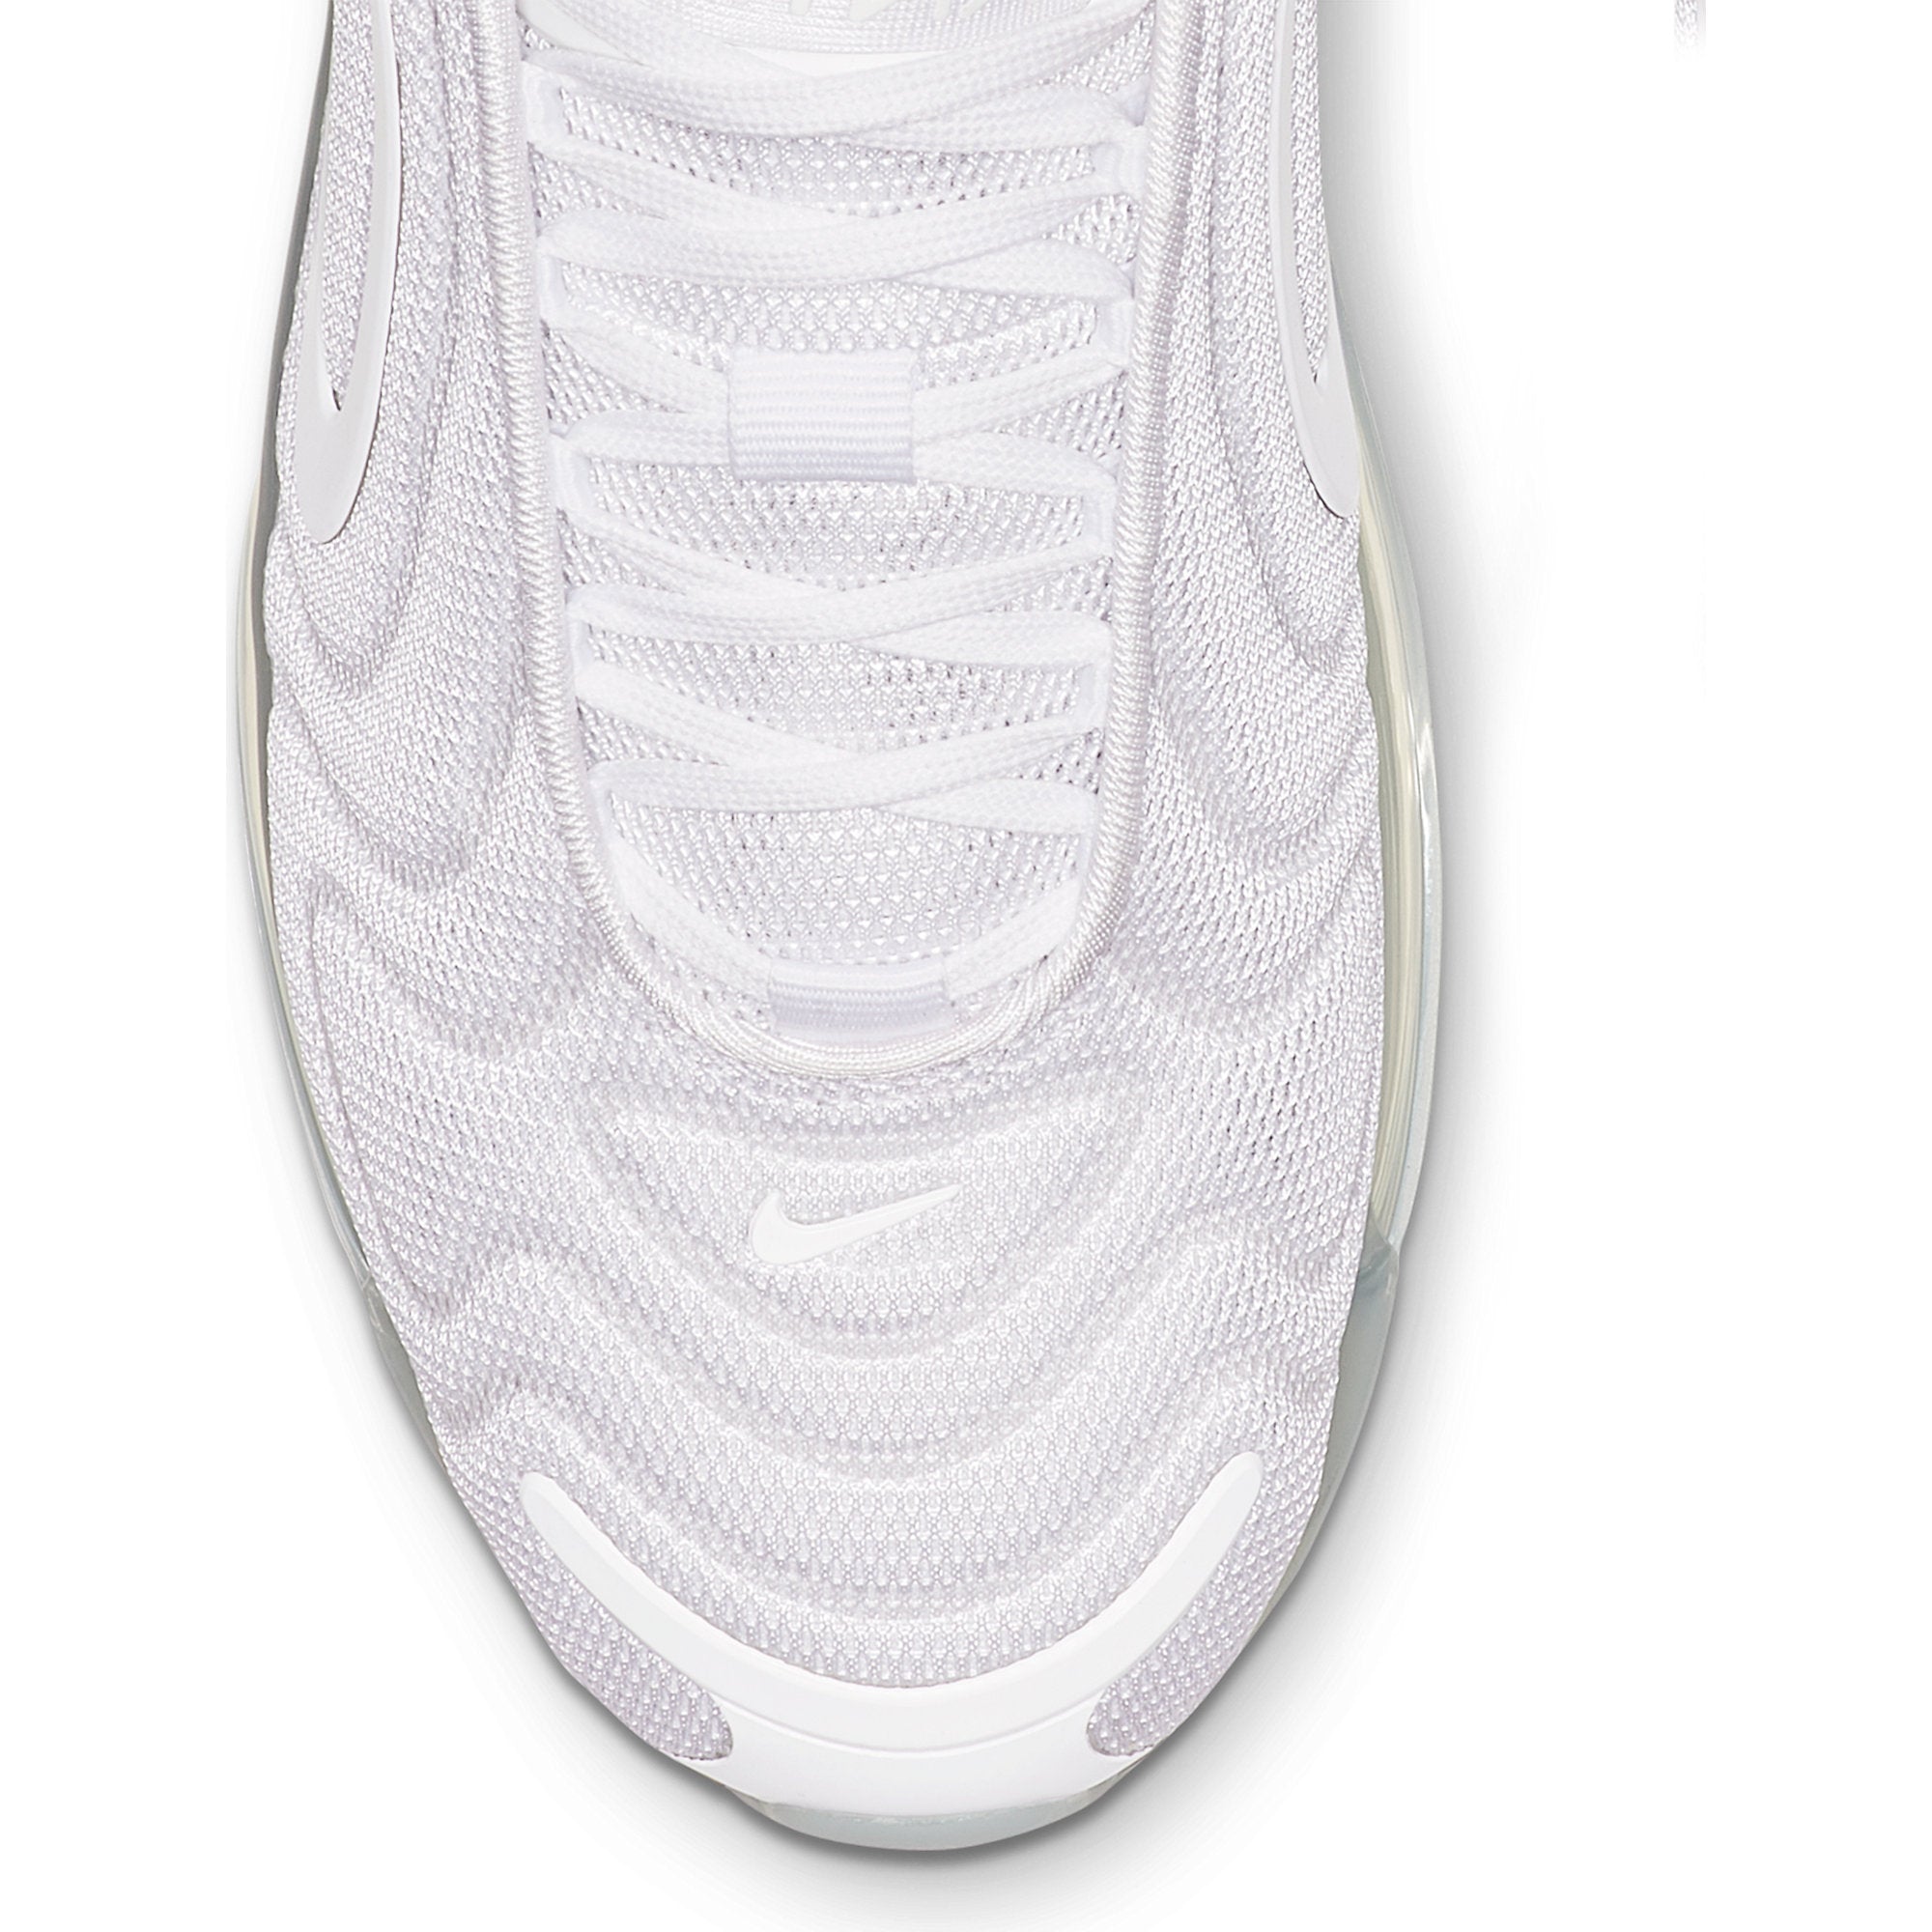 Nike Women's Air Max 720 White/Metallic Platinum-Pure Platinum - AR9293-101